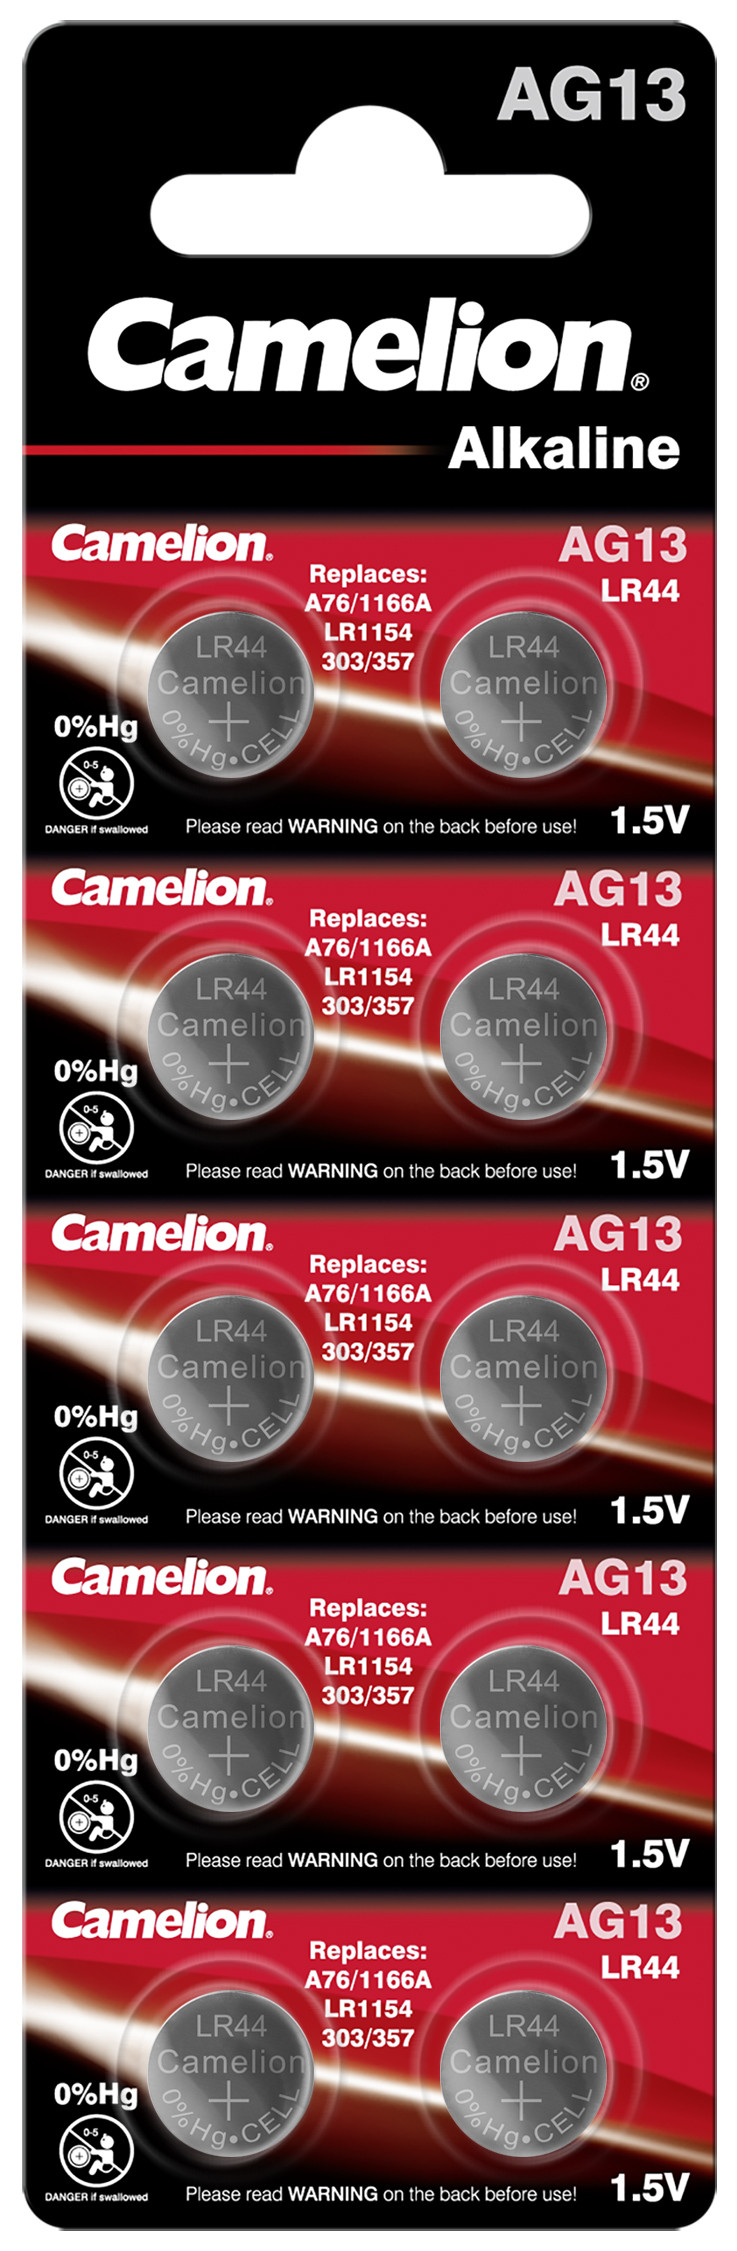 Camelion AG13 - LR44 10x